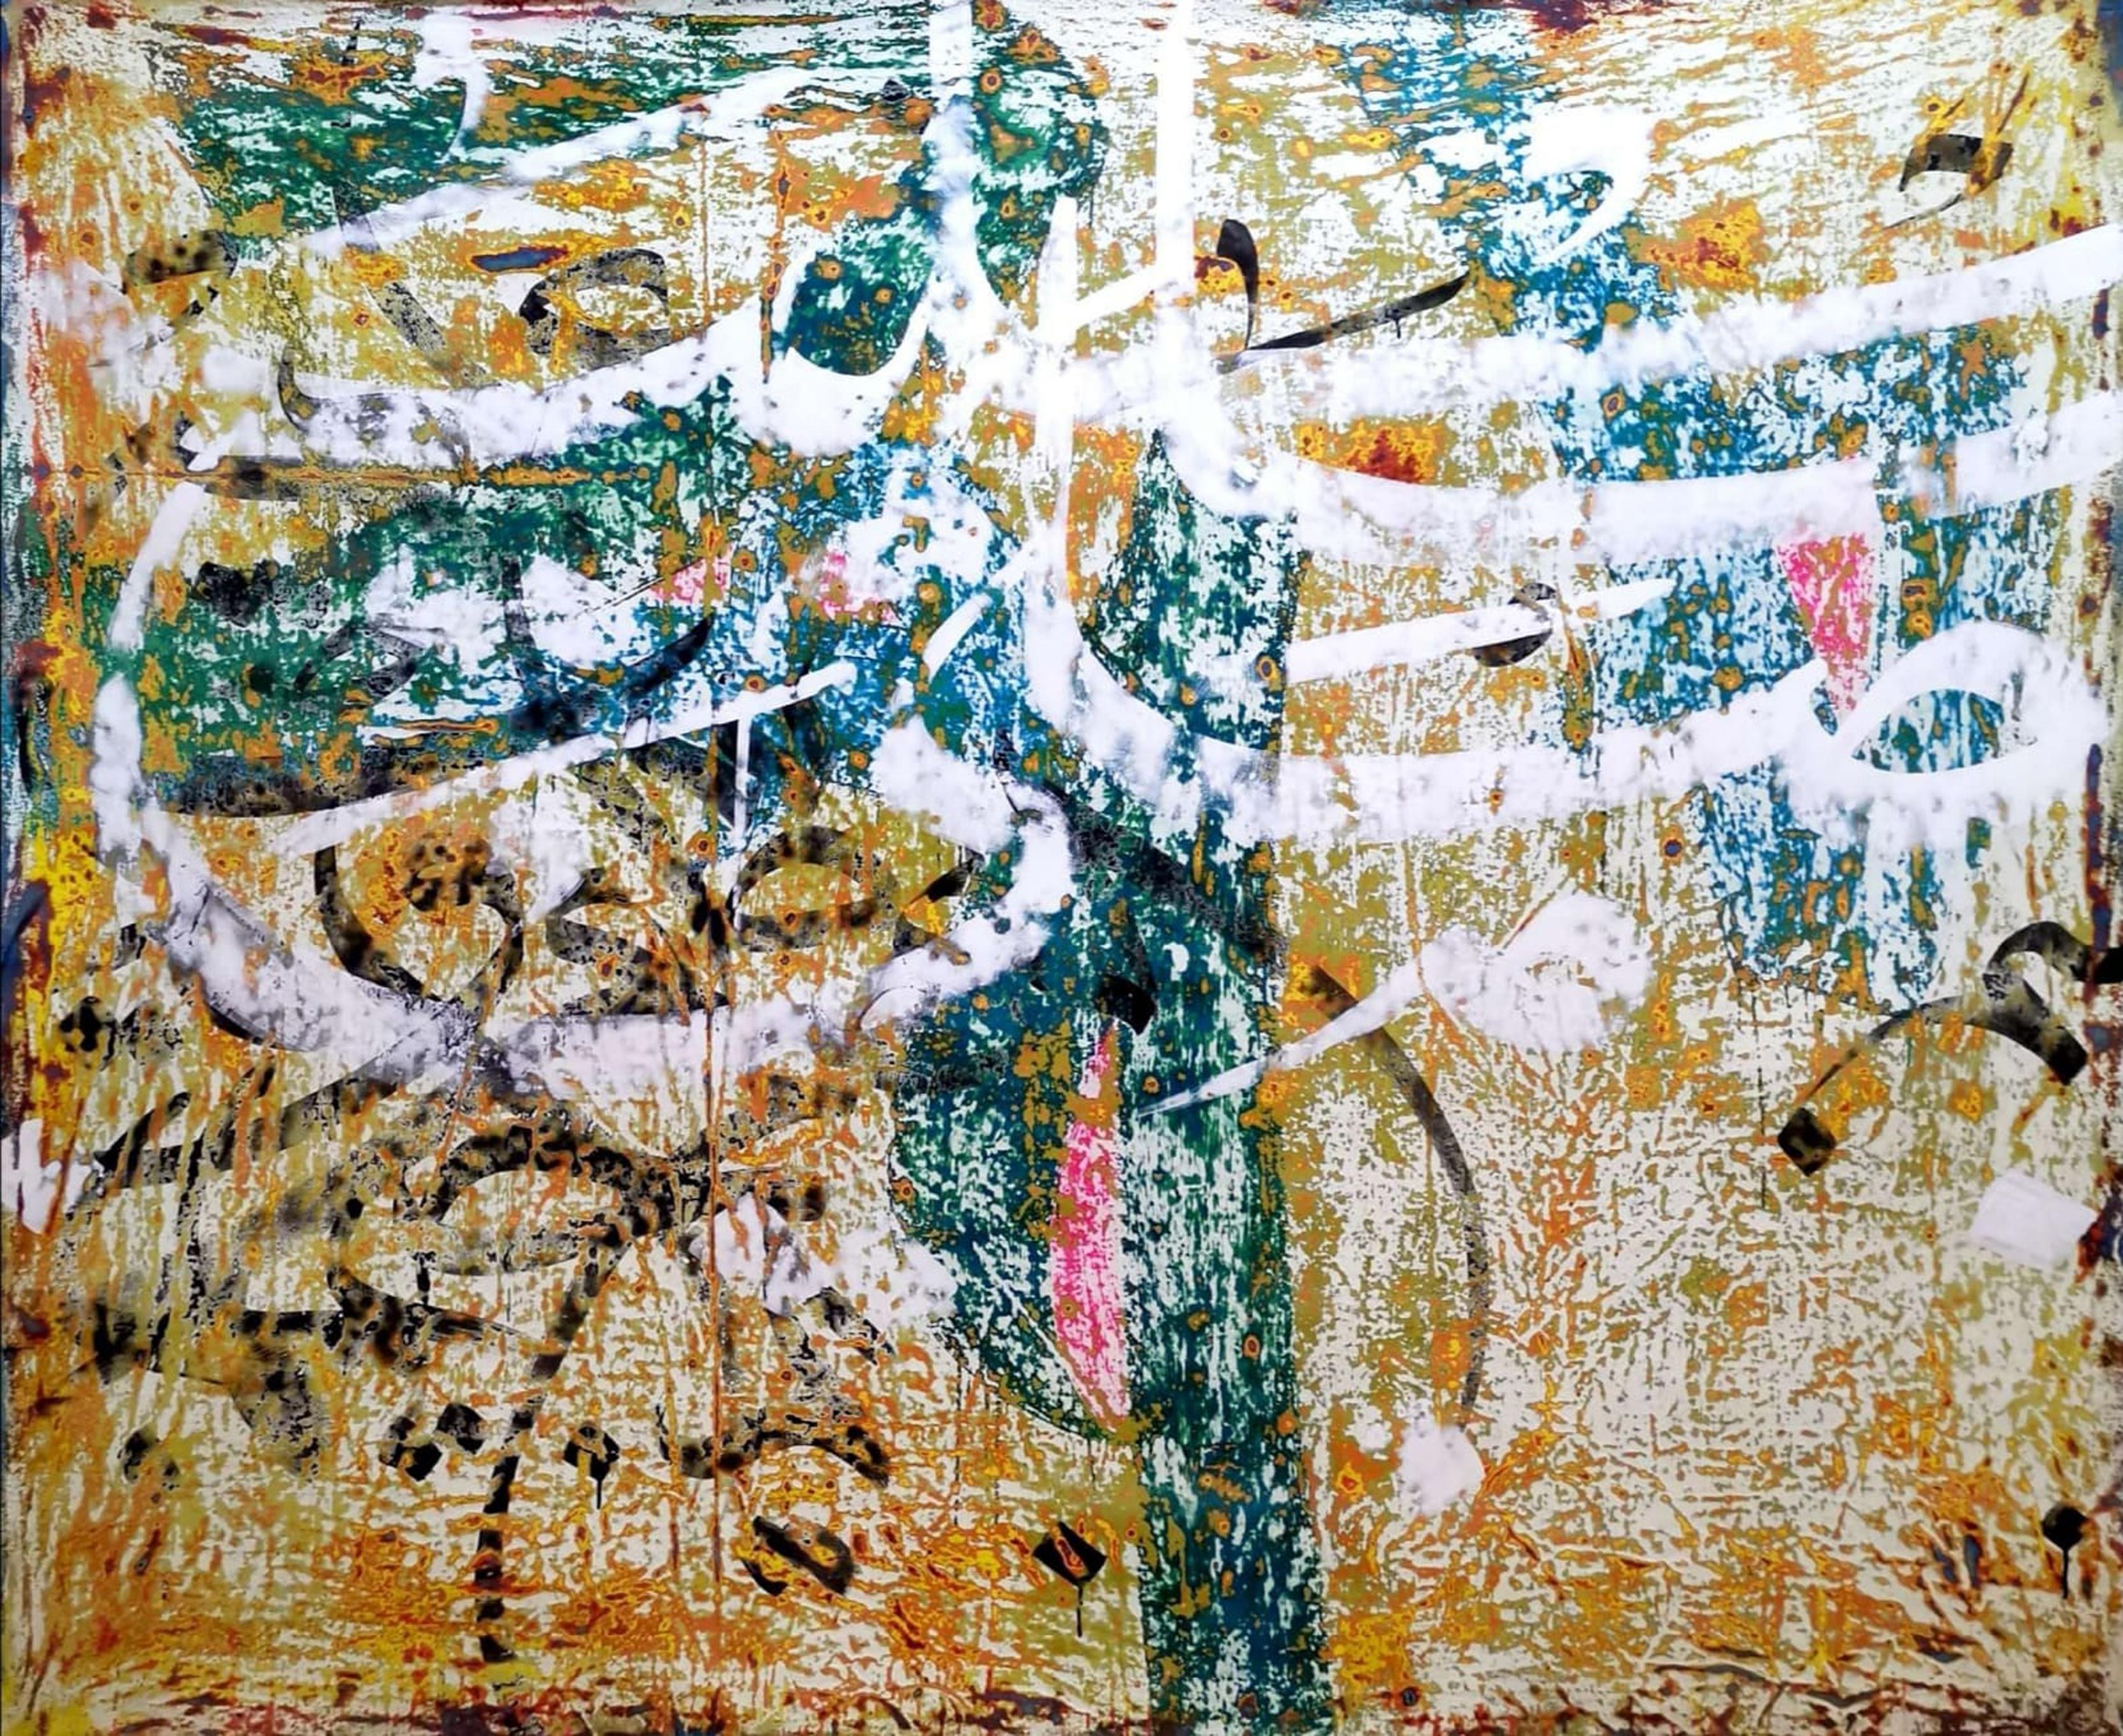 "Abstrakte Kalligraphie" Gemälde 55" x 59" Zoll von Ibrahim Khatab

Ibrahim Khatab wurde 1984 in Kairo geboren, arbeitet als Co-Dozent an der Universität Kairo und mischt in seinen Werken Malerei, Videokunst und Installation. Er begann schon in